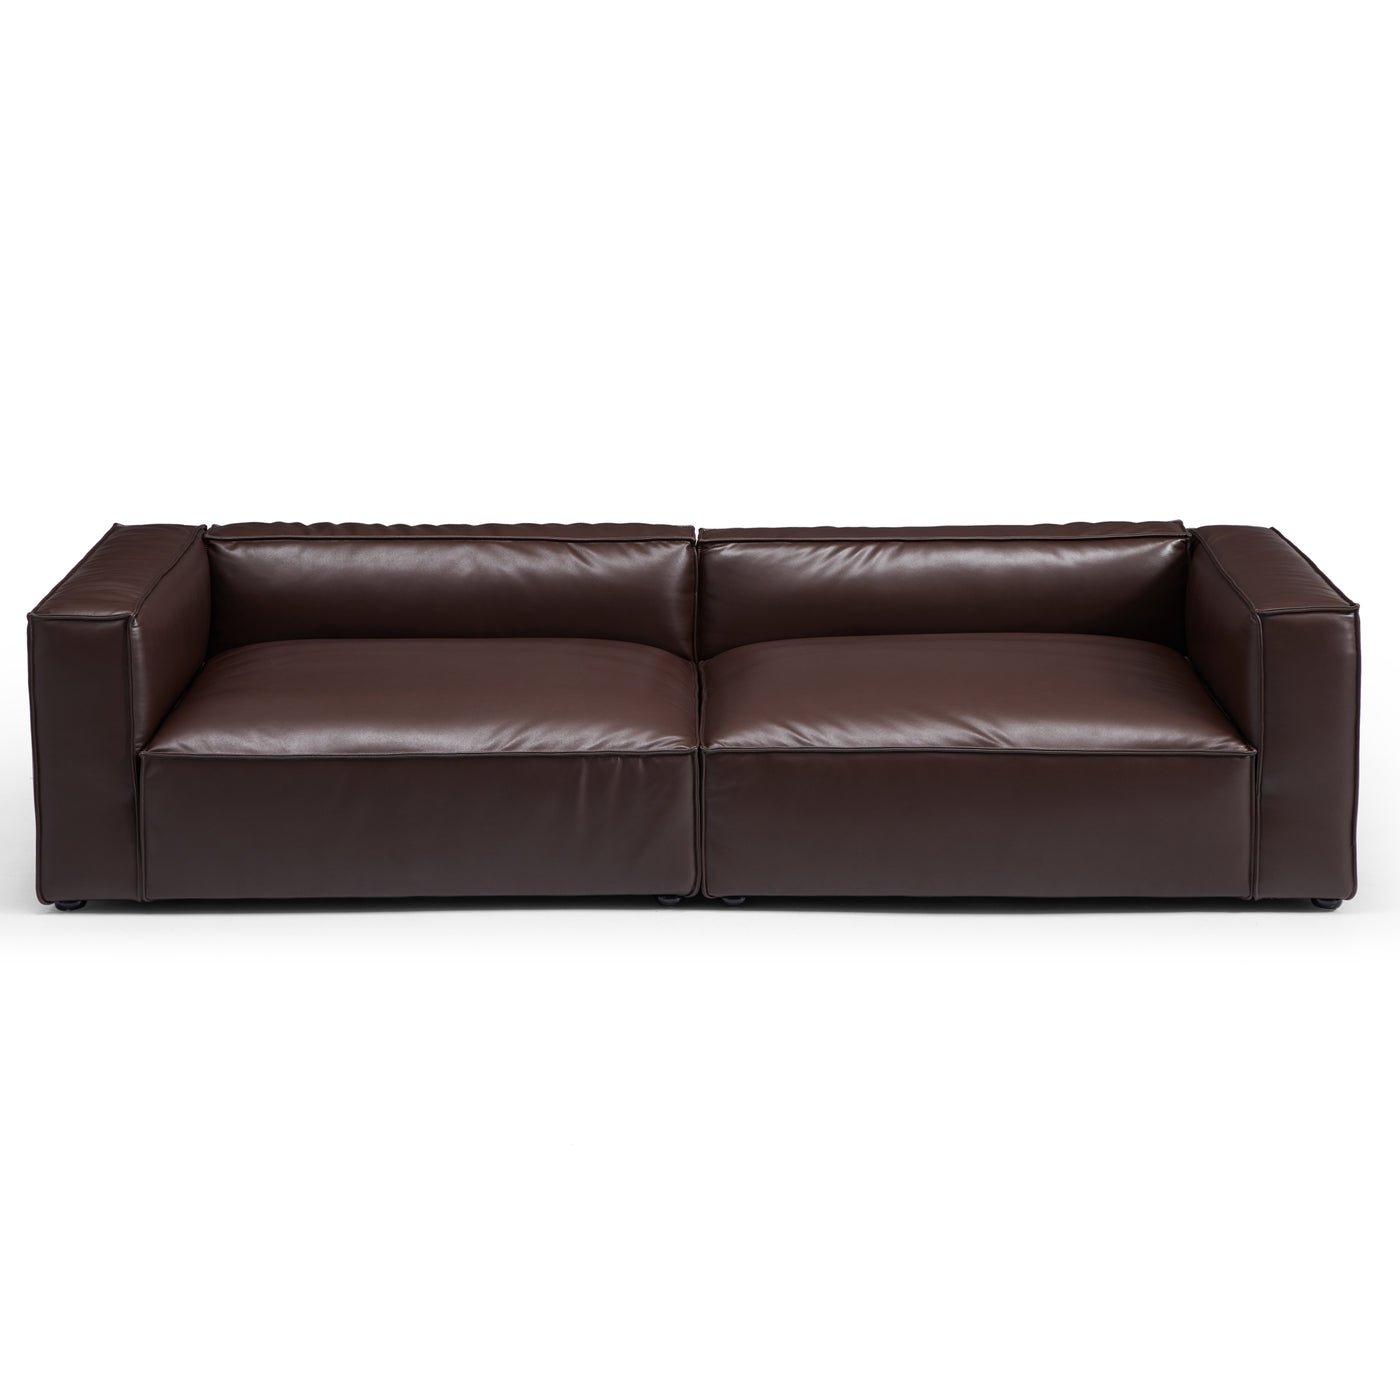 Luxury Minimalist Dark Brown Leather Daybed Sofa-Dark Brown